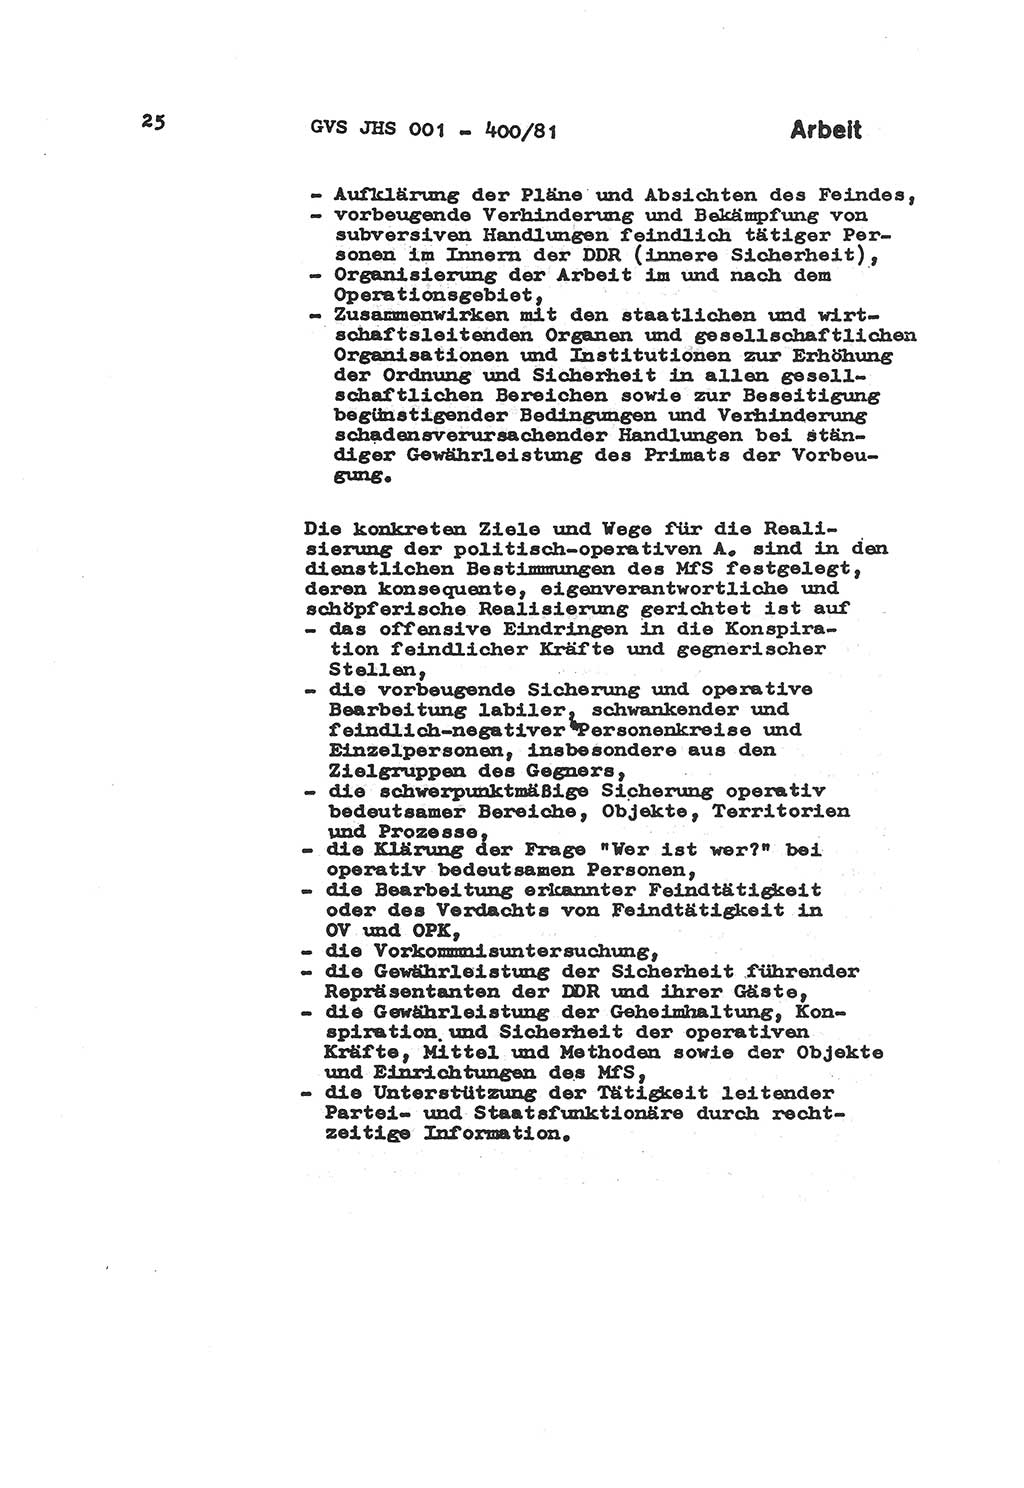 Wörterbuch der politisch-operativen Arbeit, Ministerium für Staatssicherheit (MfS) [Deutsche Demokratische Republik (DDR)], Juristische Hochschule (JHS), Geheime Verschlußsache (GVS) o001-400/81, Potsdam 1985, Blatt 25 (Wb. pol.-op. Arb. MfS DDR JHS GVS o001-400/81 1985, Bl. 25)